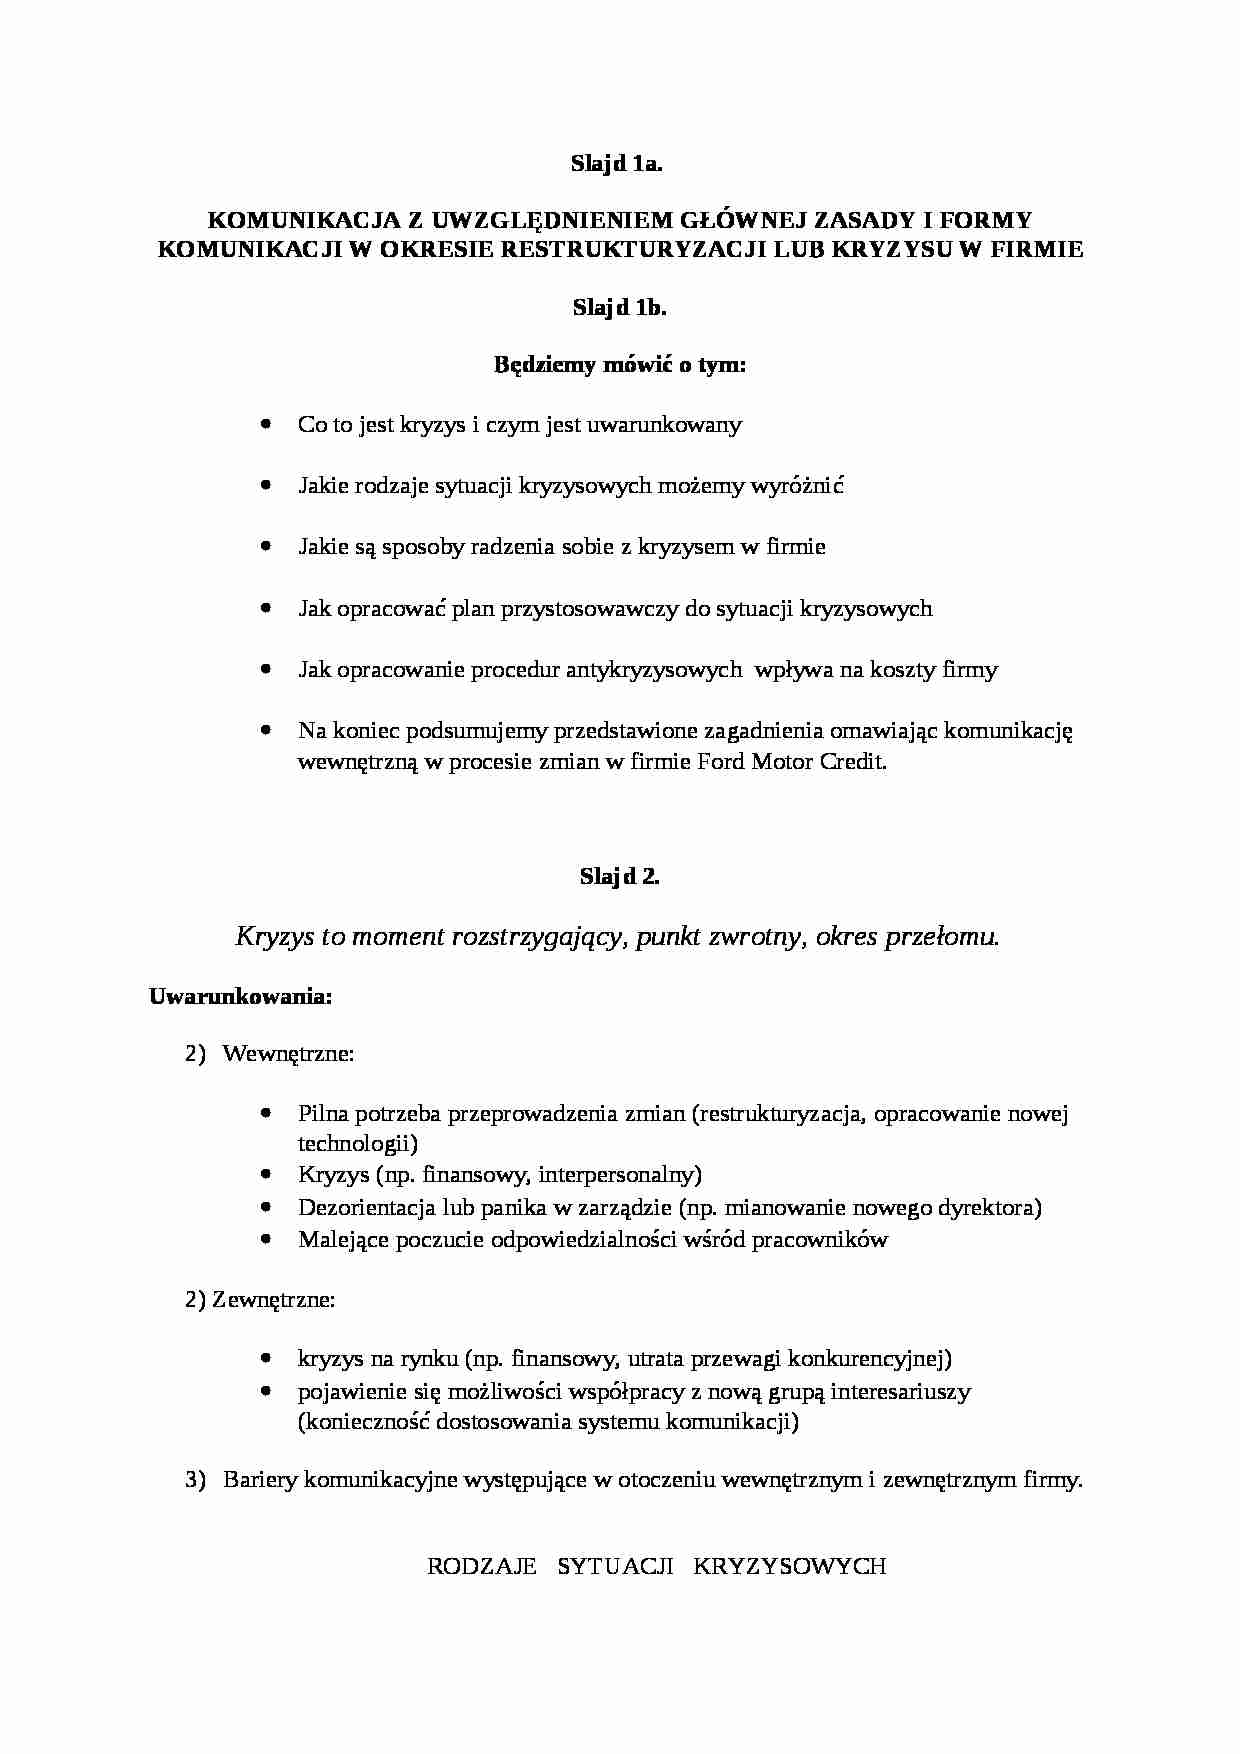 Psychologia pracy-style kierowania - strona 1